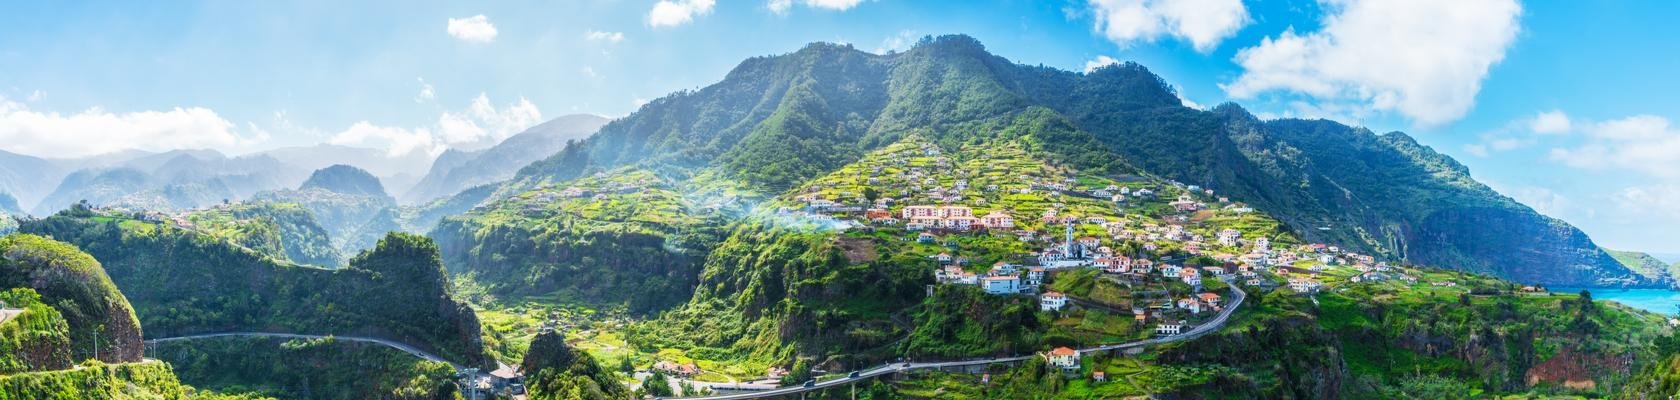 De groene noordkust van Madeira